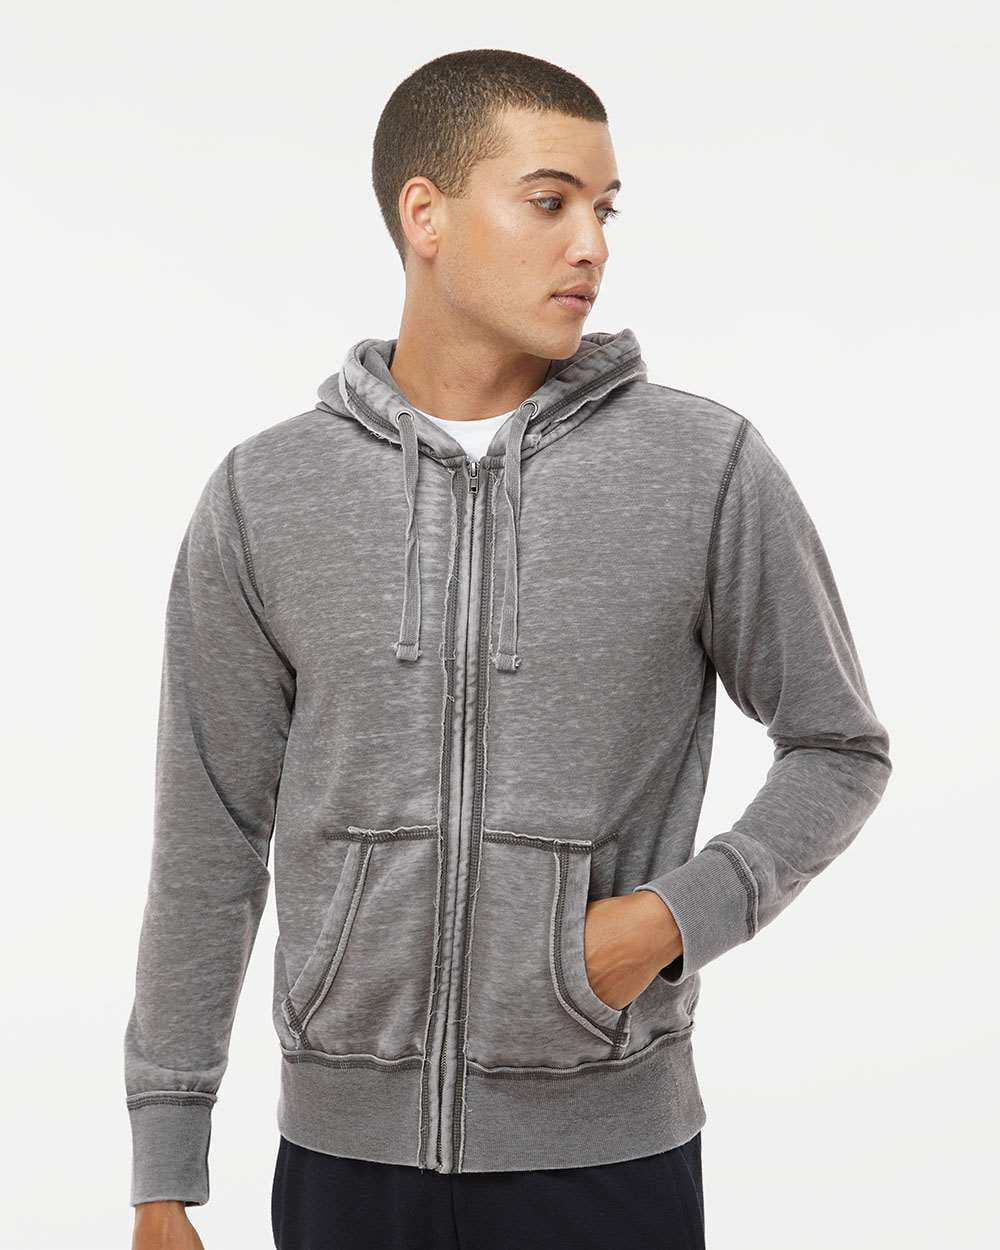 11 Oz Ultrasoft Cotton Zippered Fleece Hooded Sweatshirt